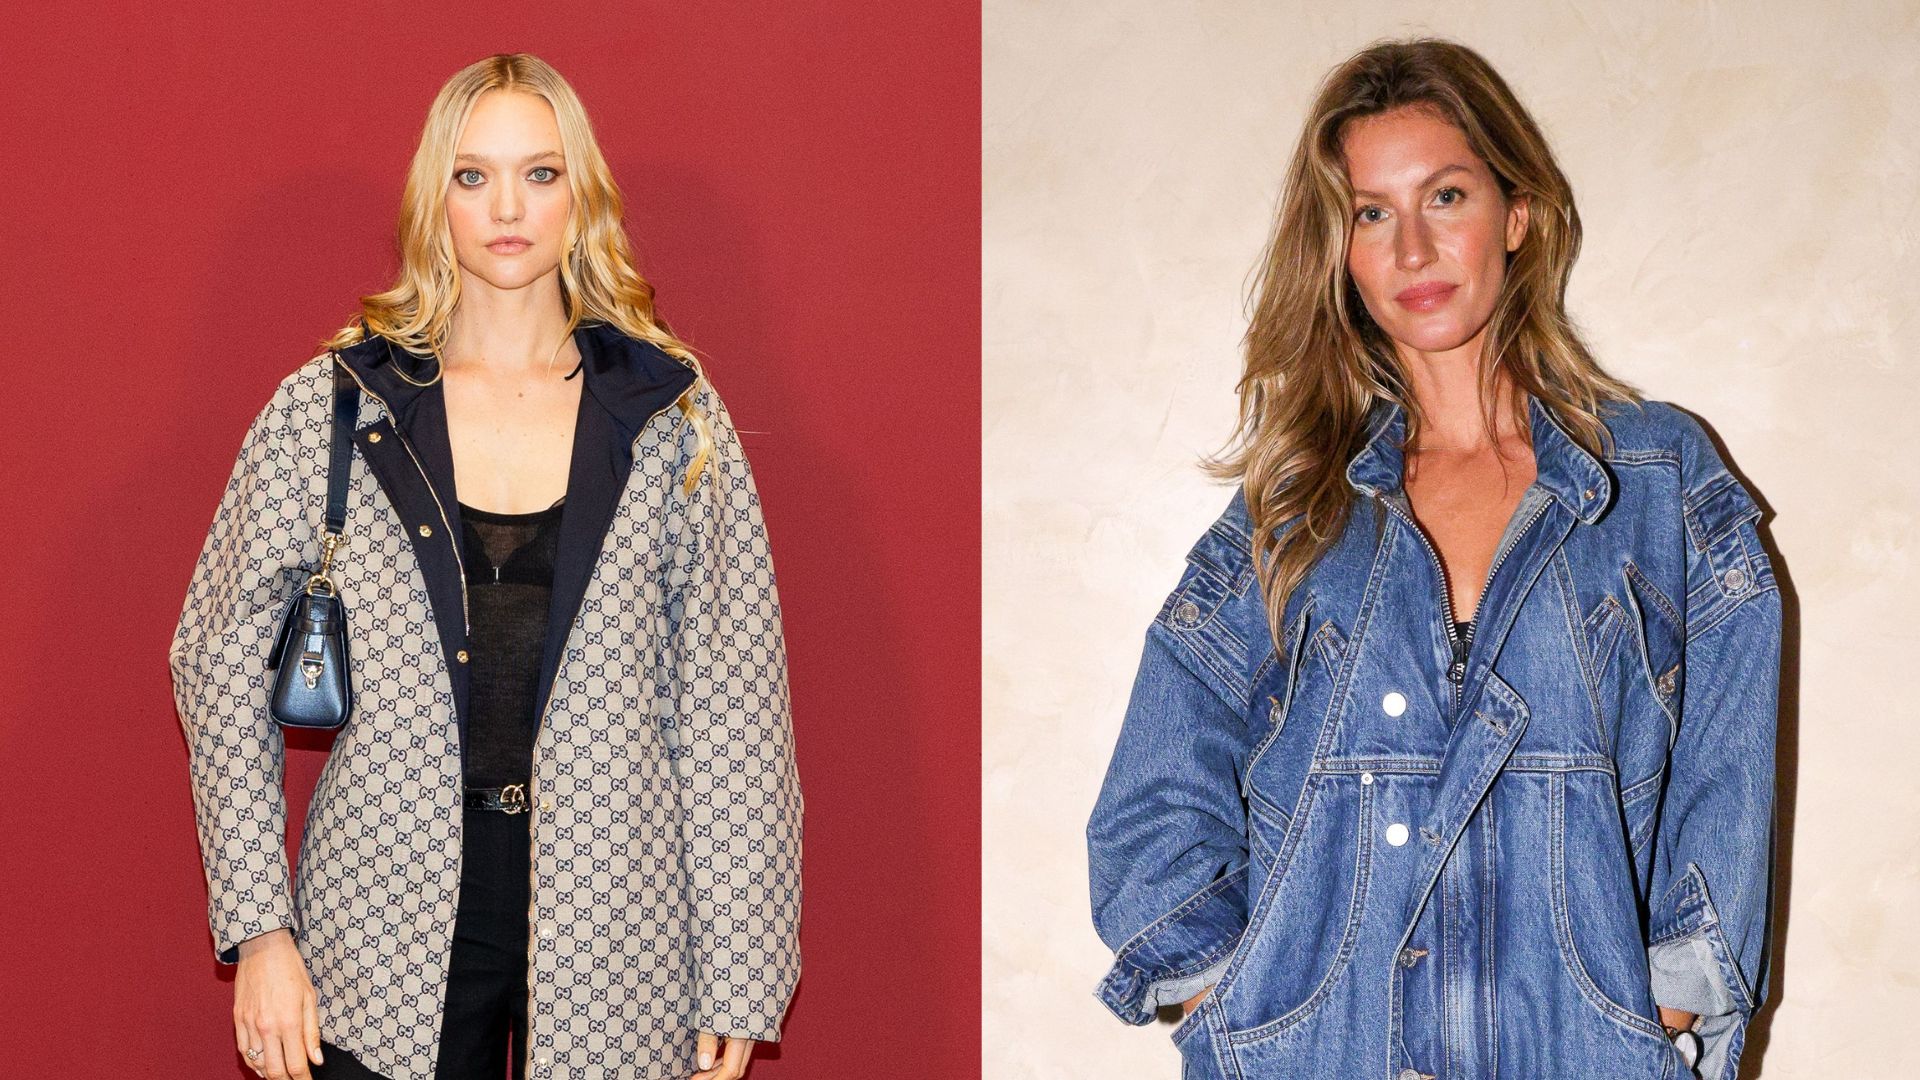 Modelo Gemma Ward revela conselho surpreendente que recebeu de Gisele Bündchen